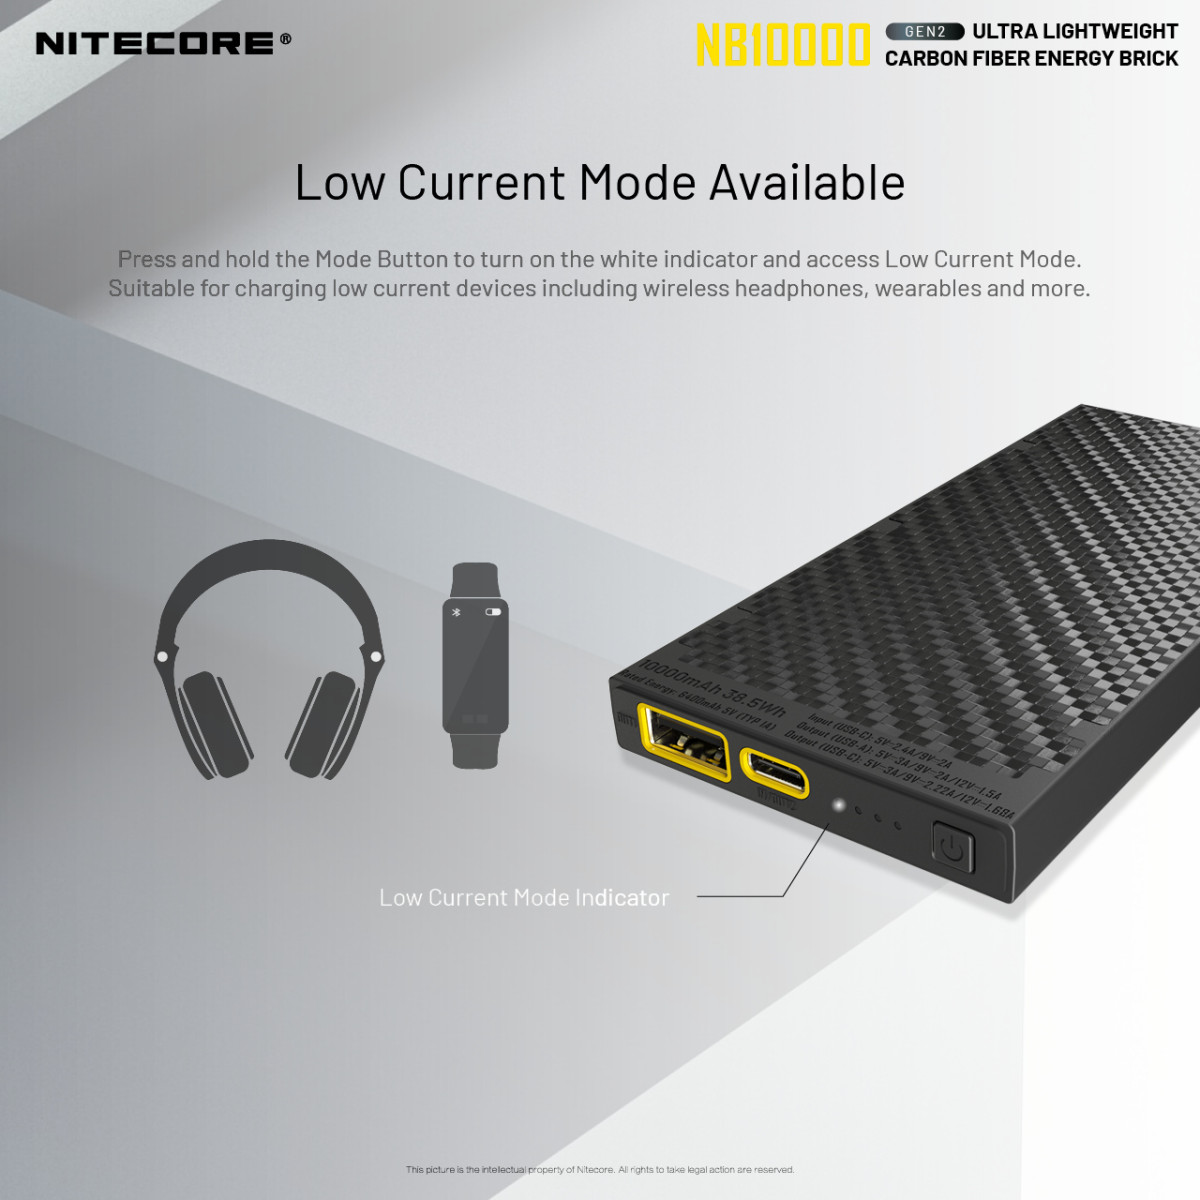 Nitecore NB10000 Gen 2 Power Bank – Zpacks